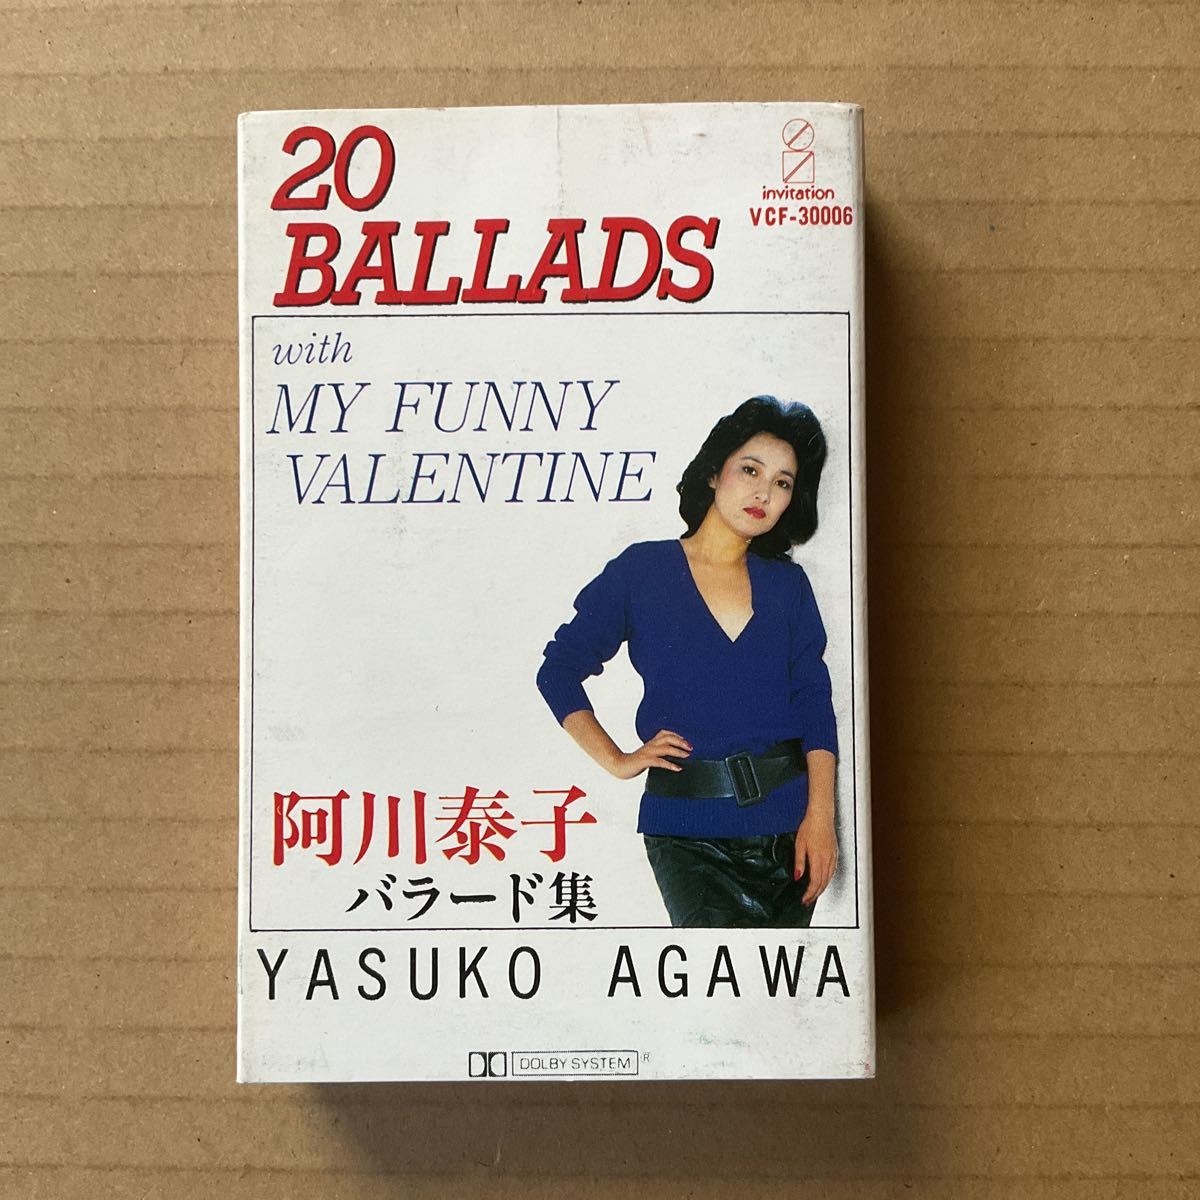 カセット 阿川泰子 - バラード集 20 BALLADS WITH MY FUNNY VALENTINEの画像1